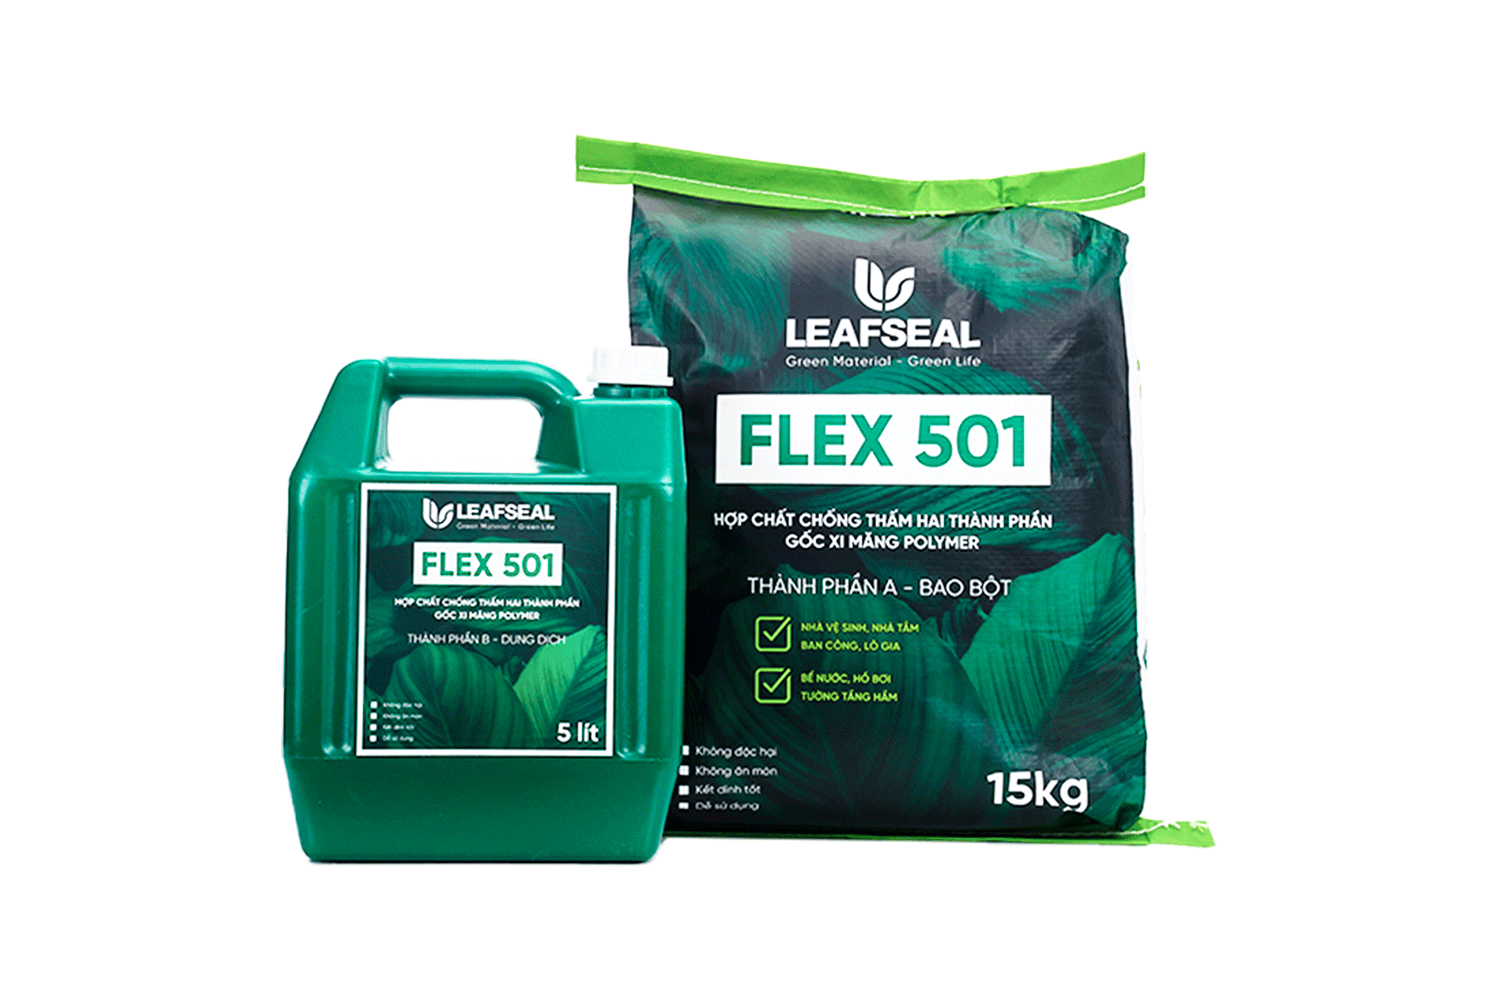 LeafSeal Flex 501